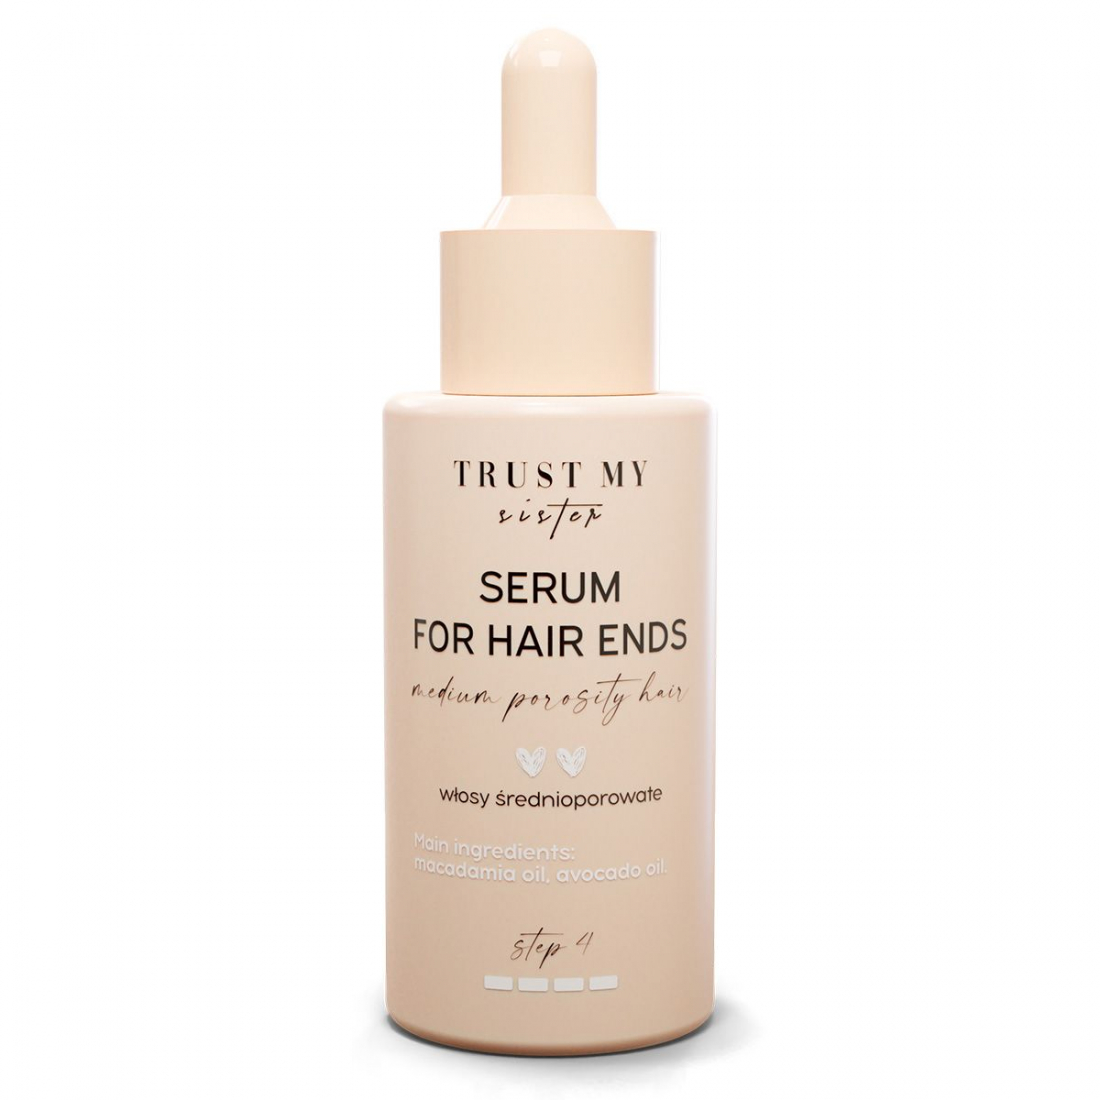 'Hair Ends Step 4' Hair Serum - 40 ml